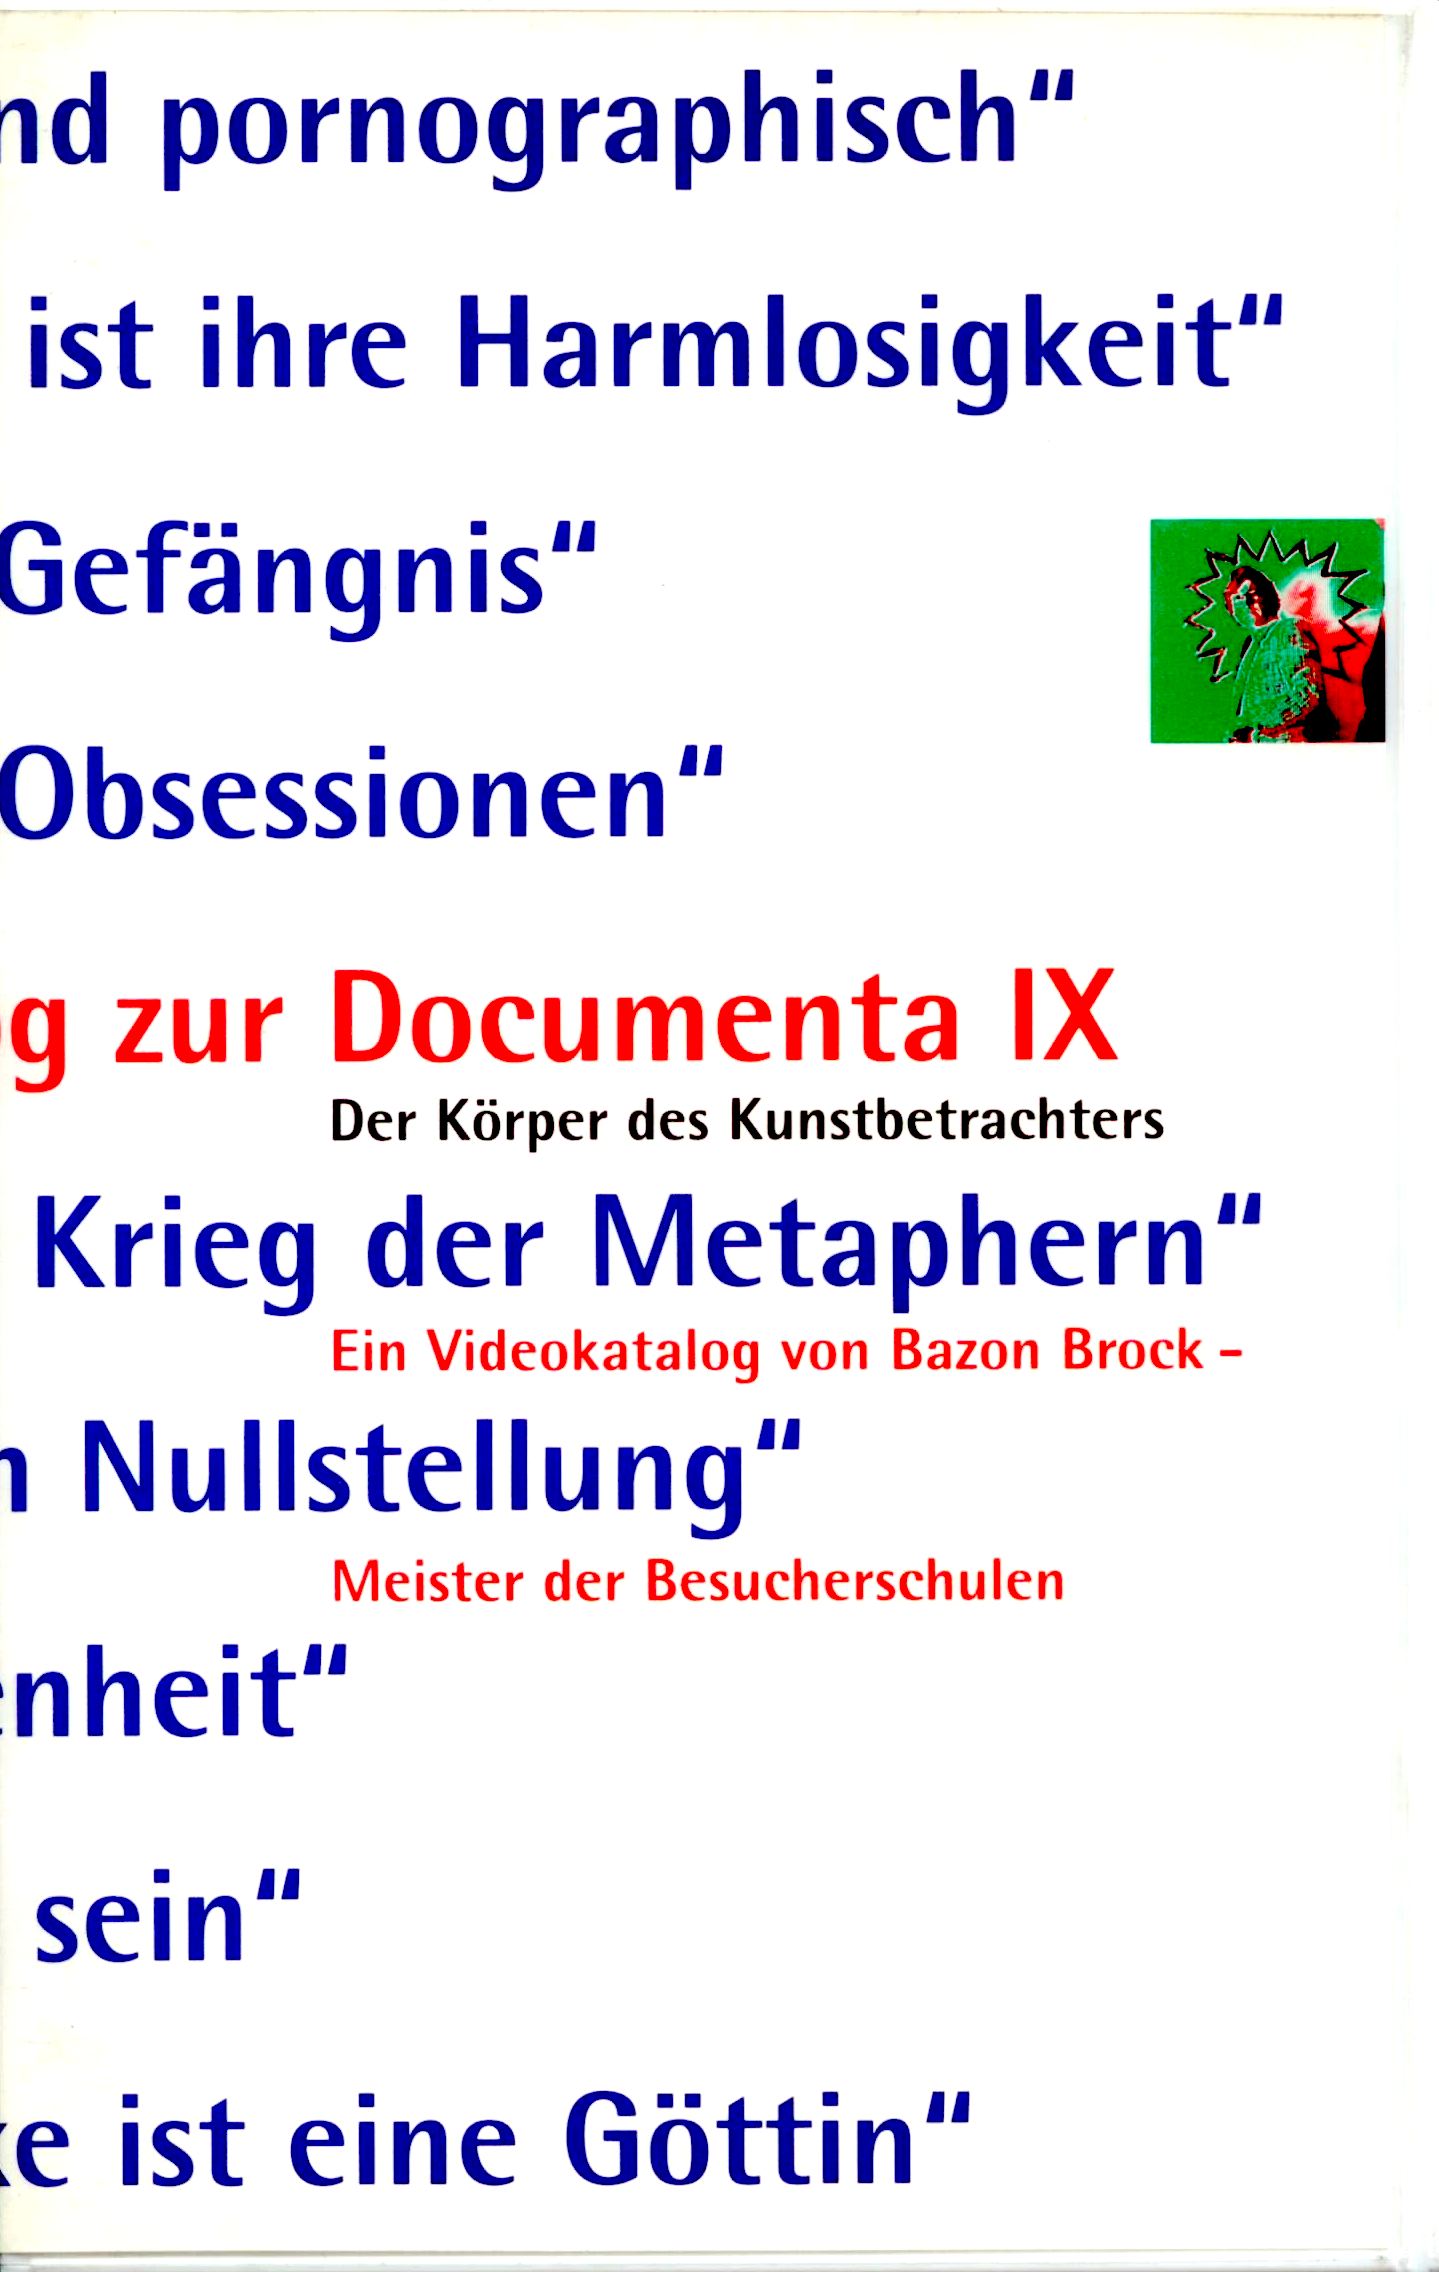 Ein Videobeitrag zur Documenta IX, Bild: Der Körper des Kunstbetrachters. Ein Videokatalog von Bazon Brock. rtv/Deutscher Supplement Verlag Nürnberg, 1992..